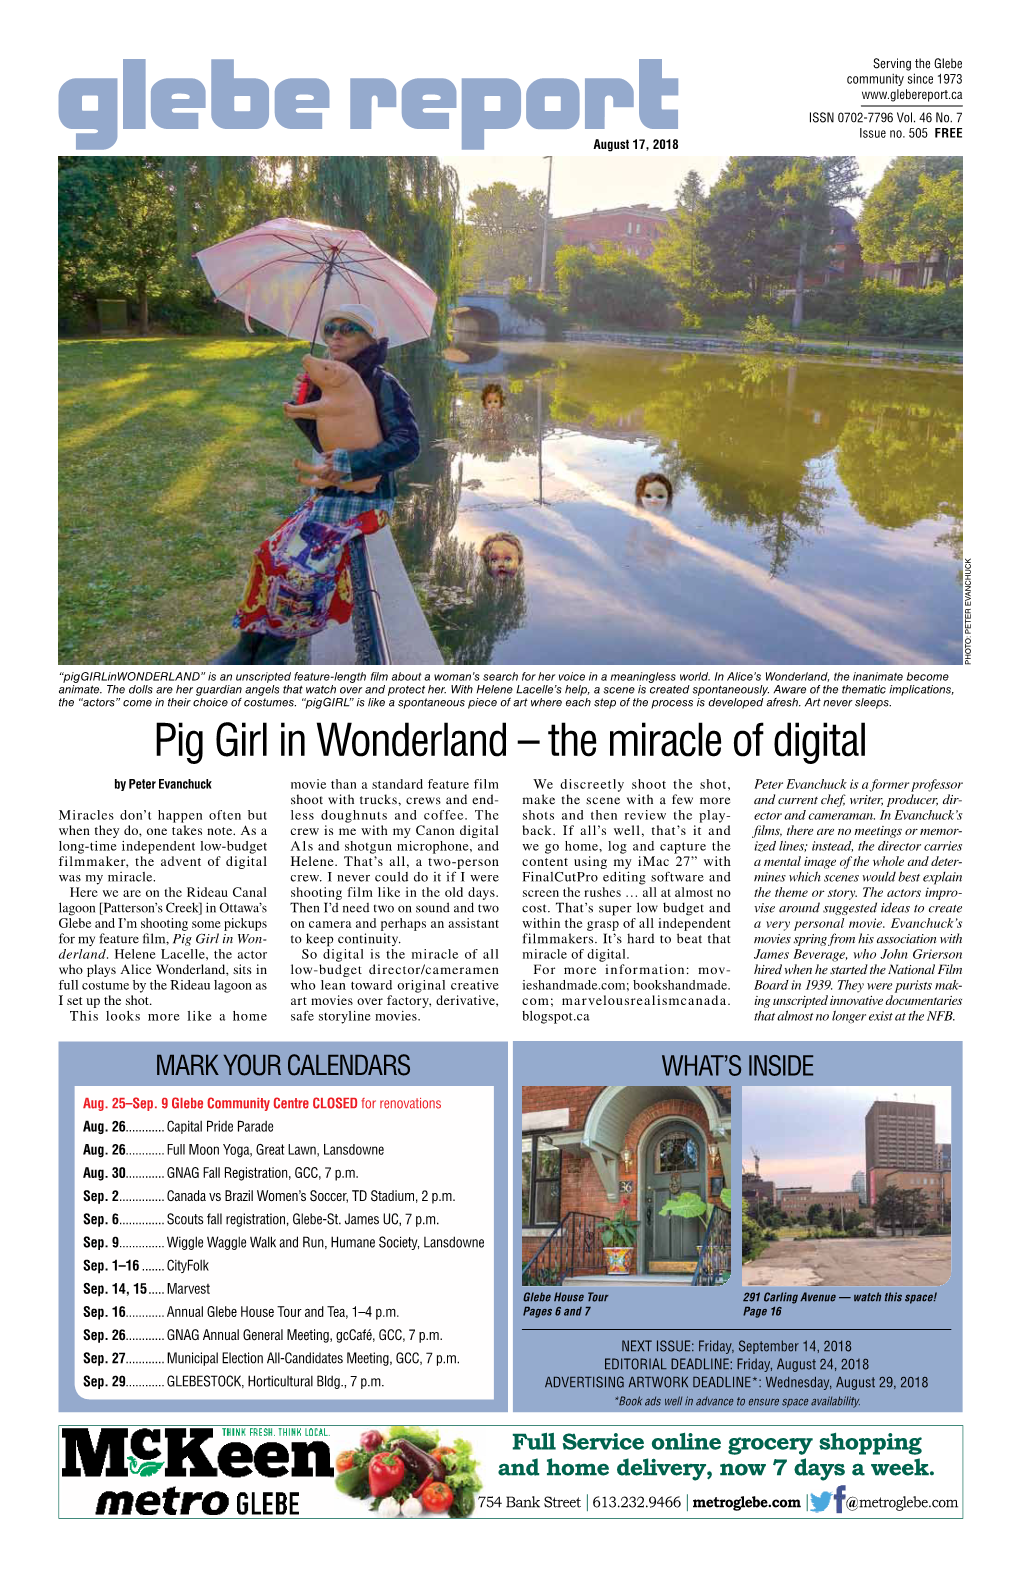 Pig Girl in Wonderland – the Miracle of Digital